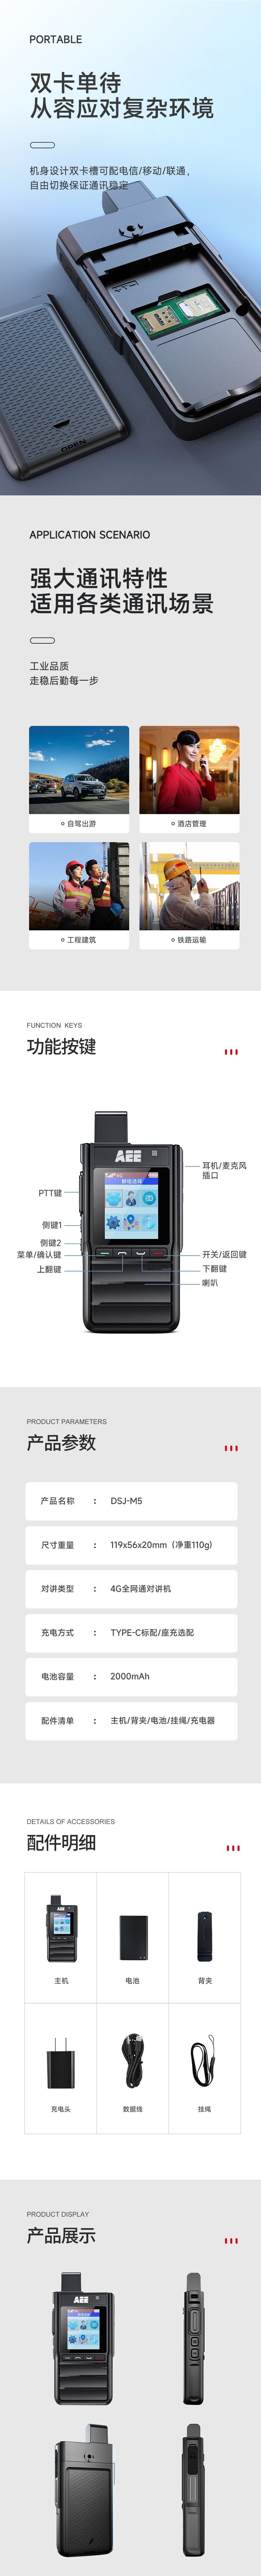 新品推荐丨AEE DSJ-M5超薄4G对讲机